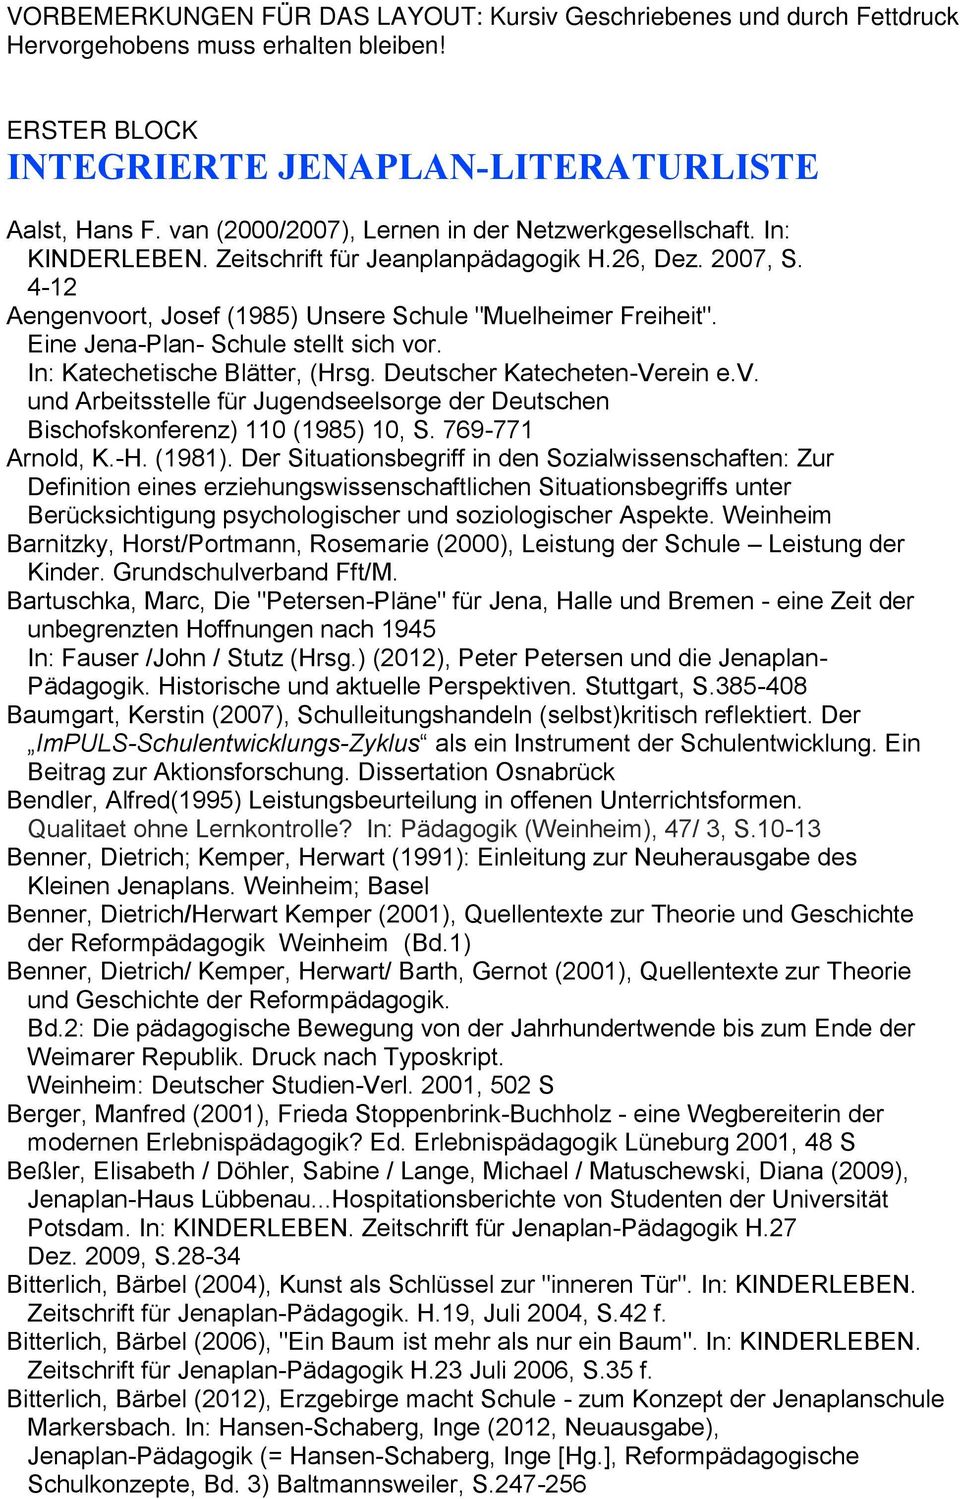 Eine Jena-Plan- Schule stellt sich vor. In: Katechetische Blätter, (Hrsg. Deutscher Katecheten-Verein e.v. und Arbeitsstelle für Jugendseelsorge der Deutschen Bischofskonferenz) 110 (1985) 10, S.